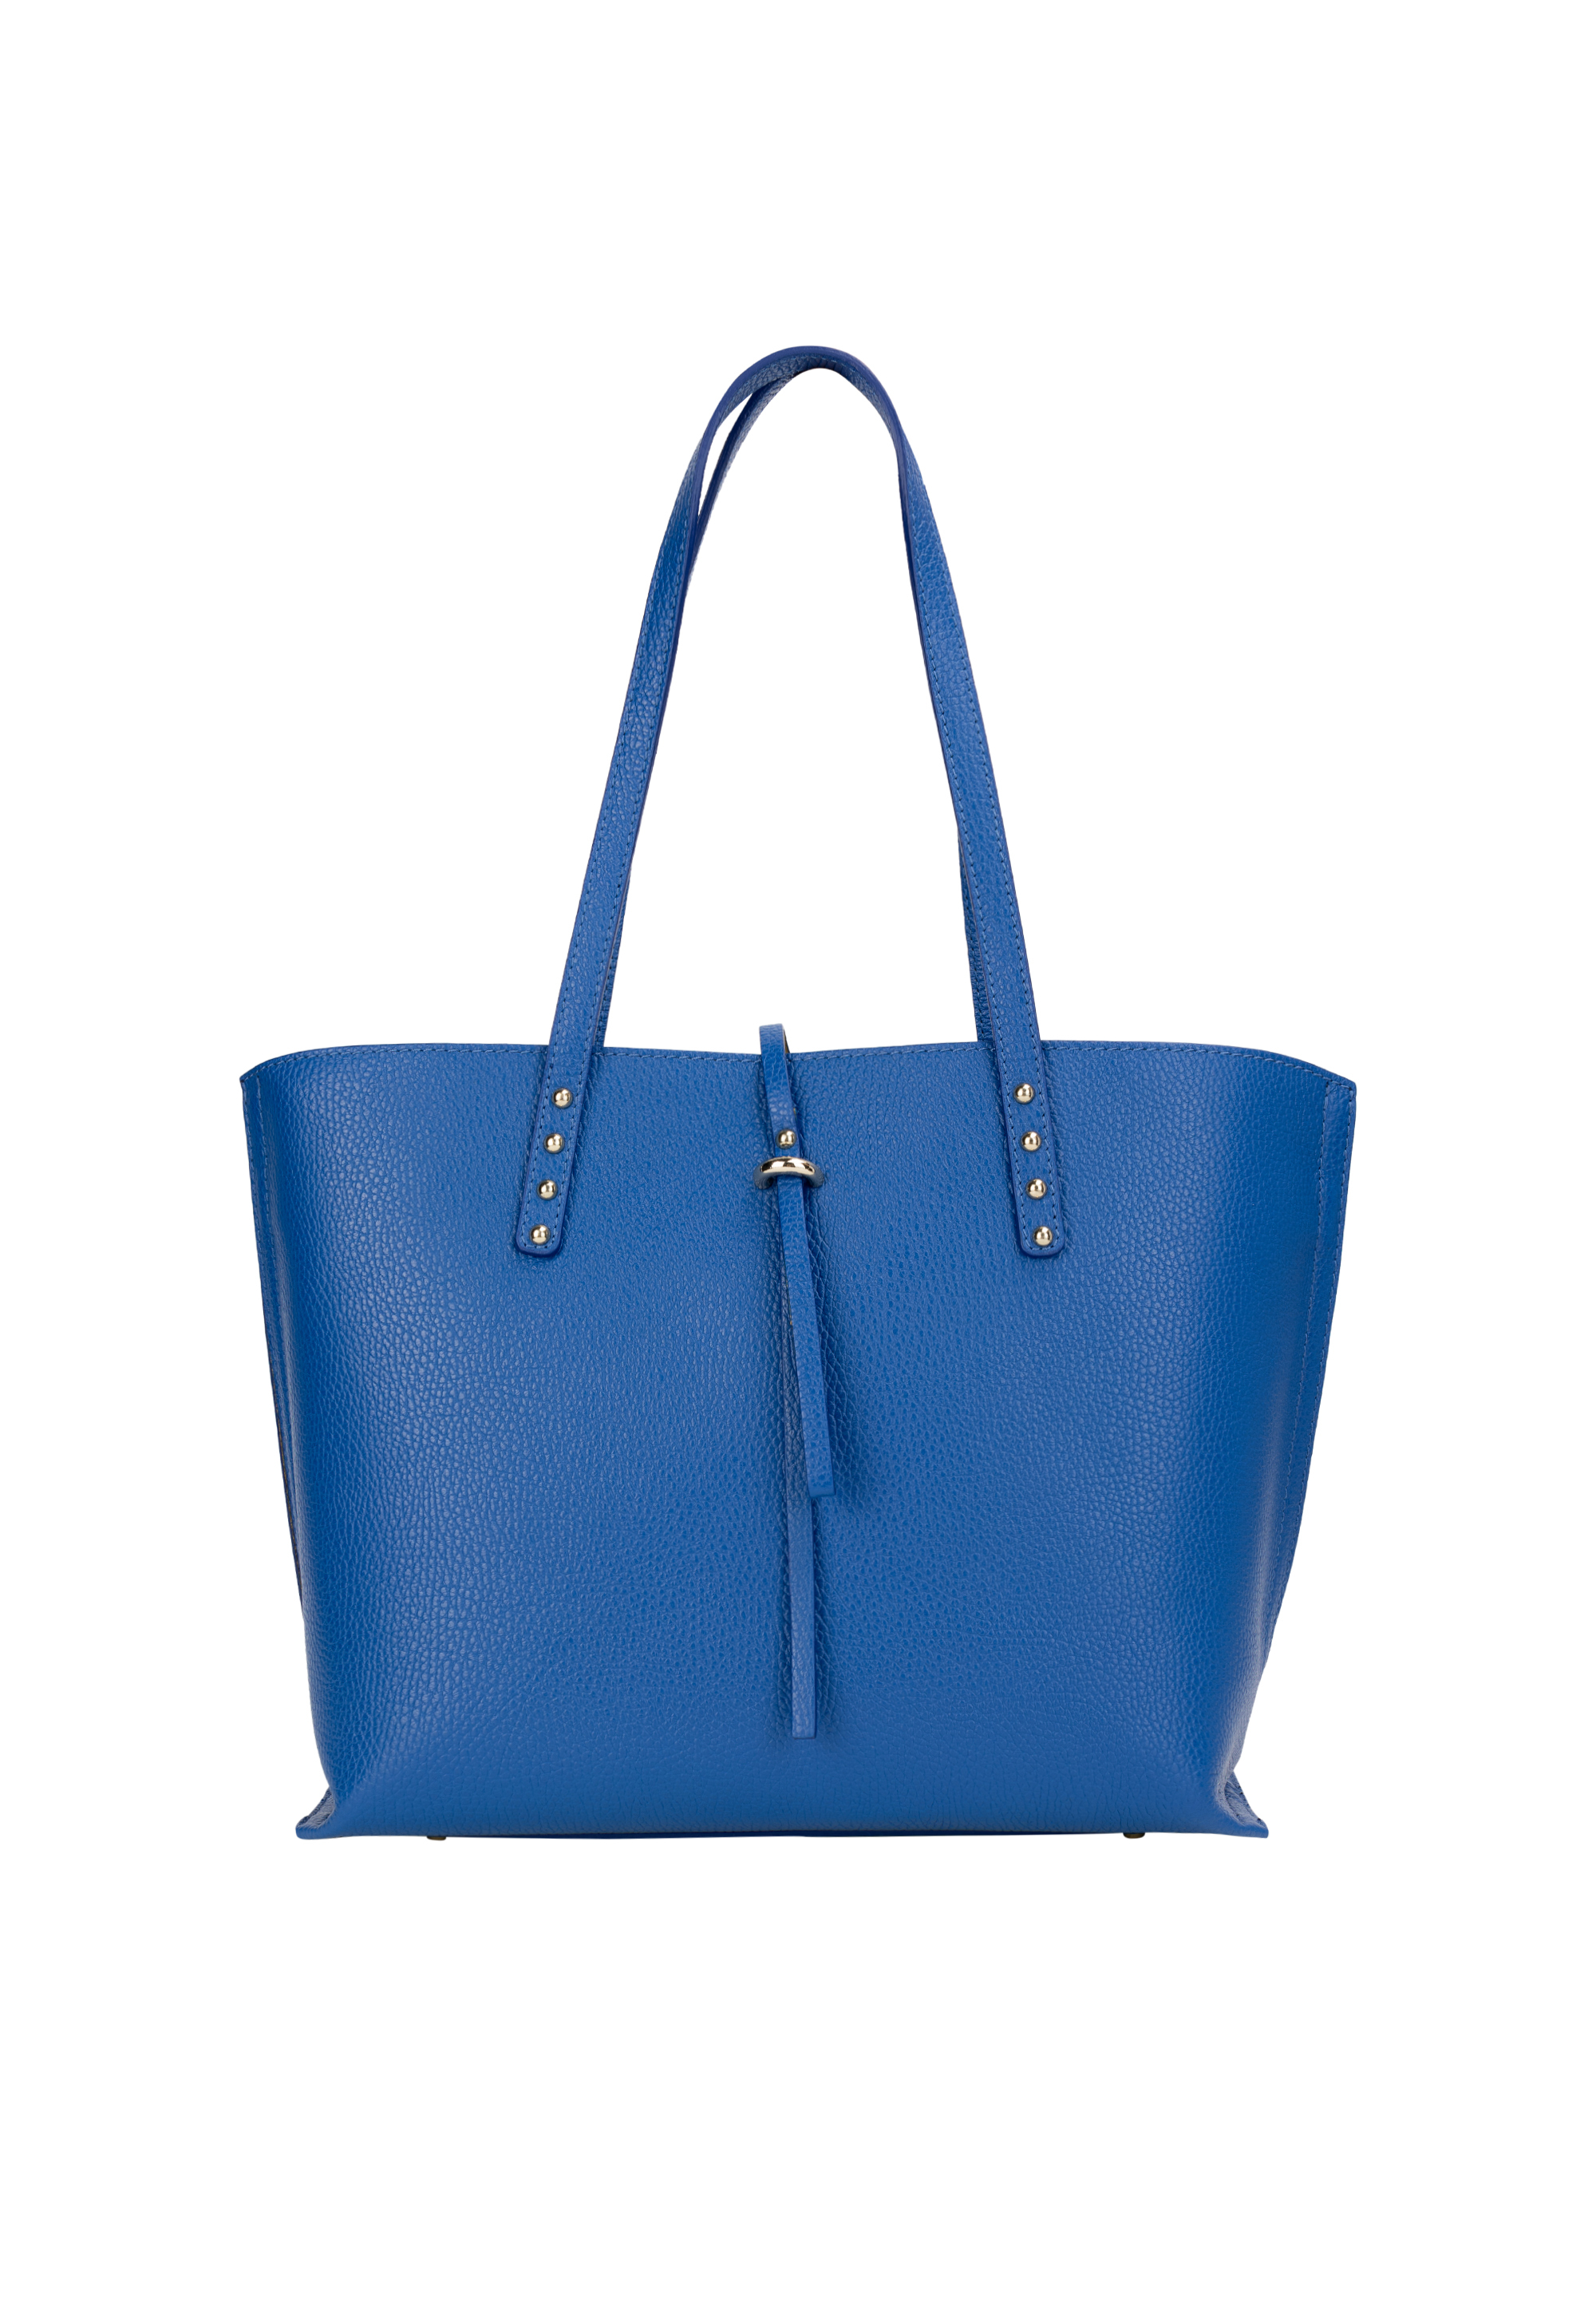 Сумка через плечо NAEMI Handtasche, цвет Azurblau сумка через плечо naemi handtasche цвет dunkeltaupe